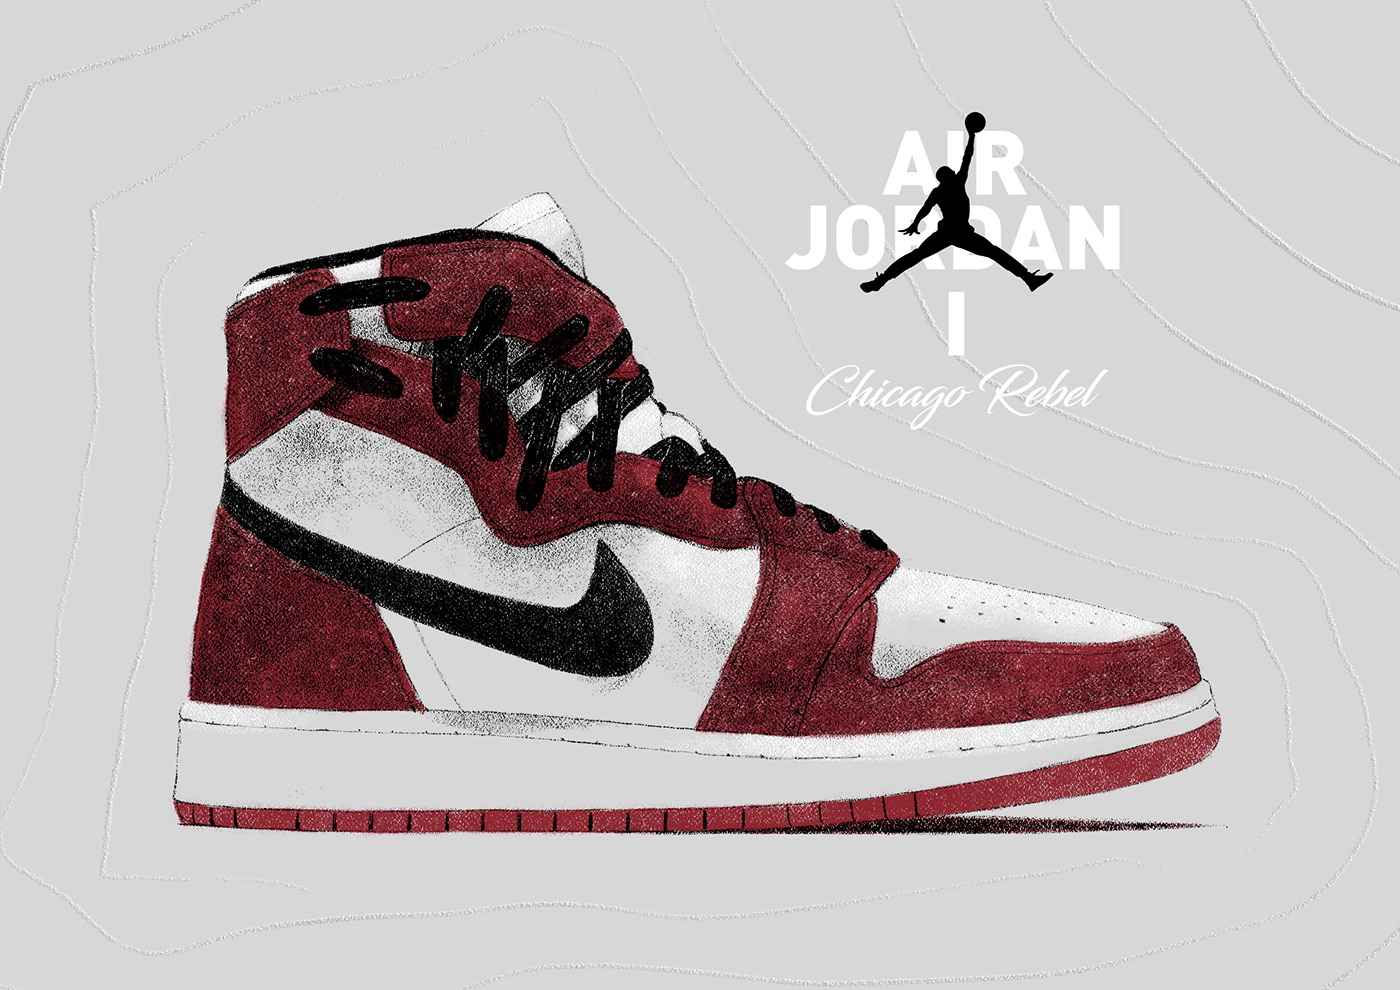 ILLUSTRATION  Nike jordan Retro air Air Jordan 1 sneakers adidas puma reebok shoes jumpman